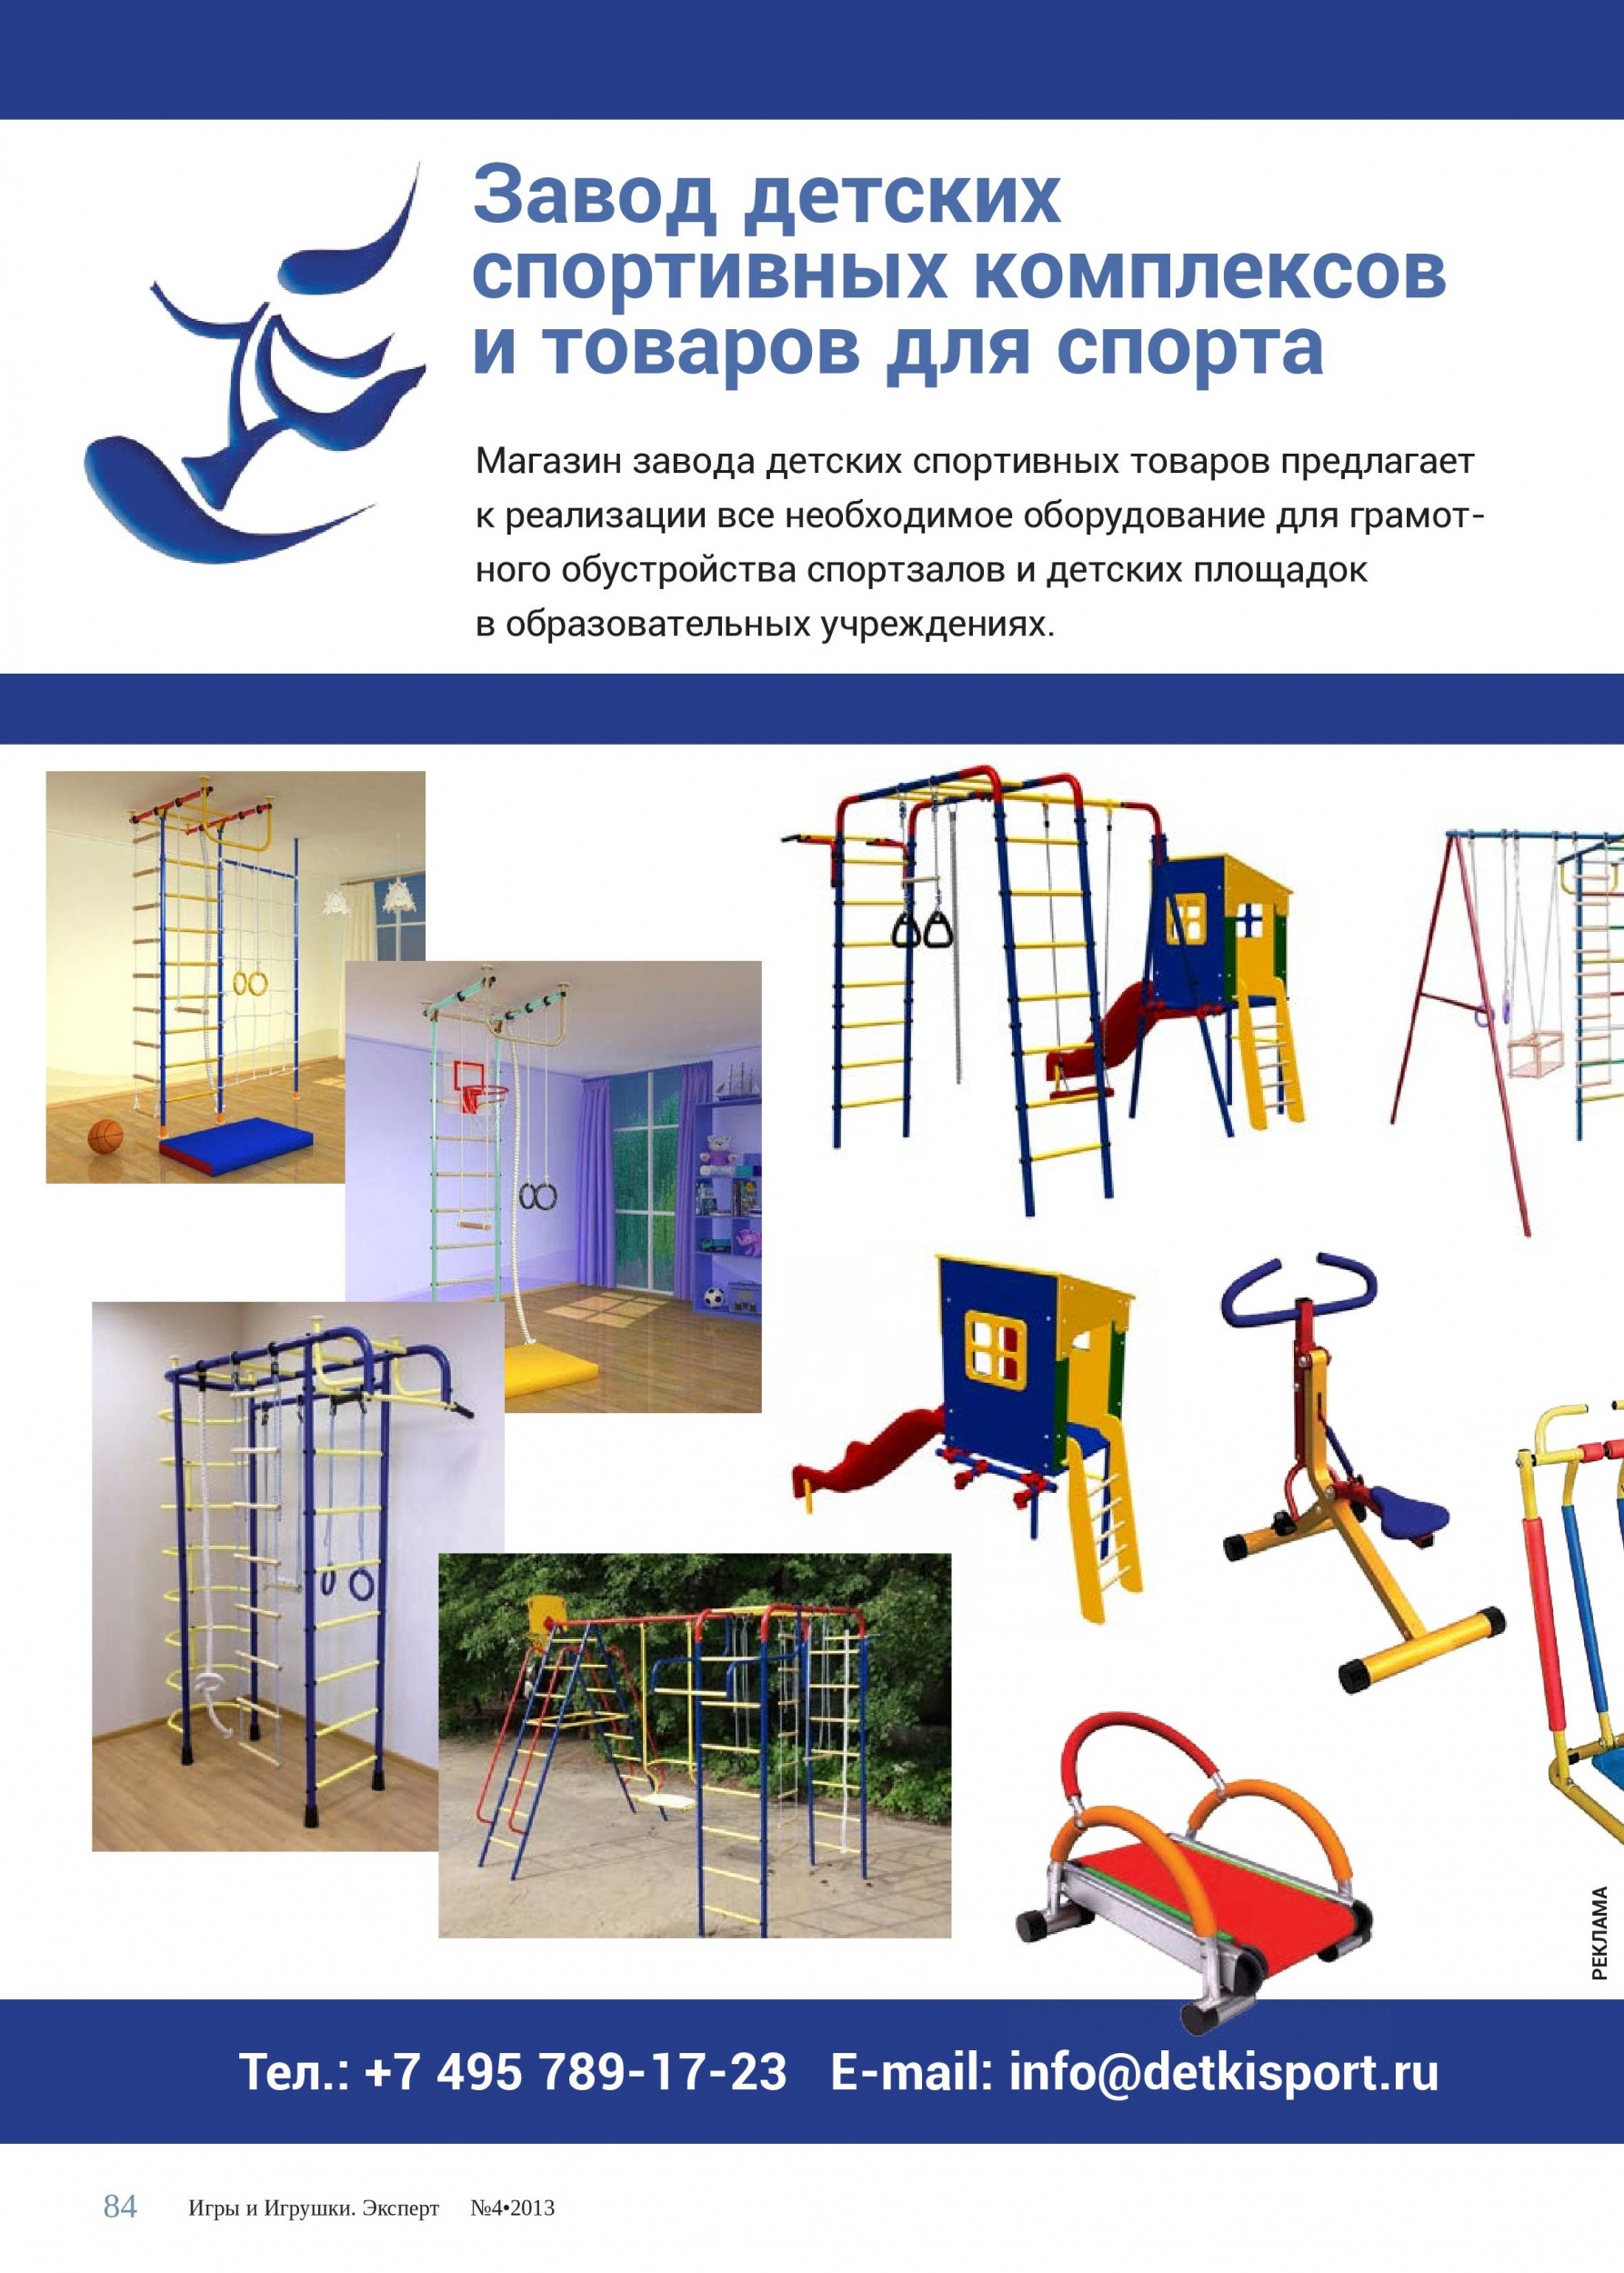 Завод детских спортивных комплексов и товаров для спорта 